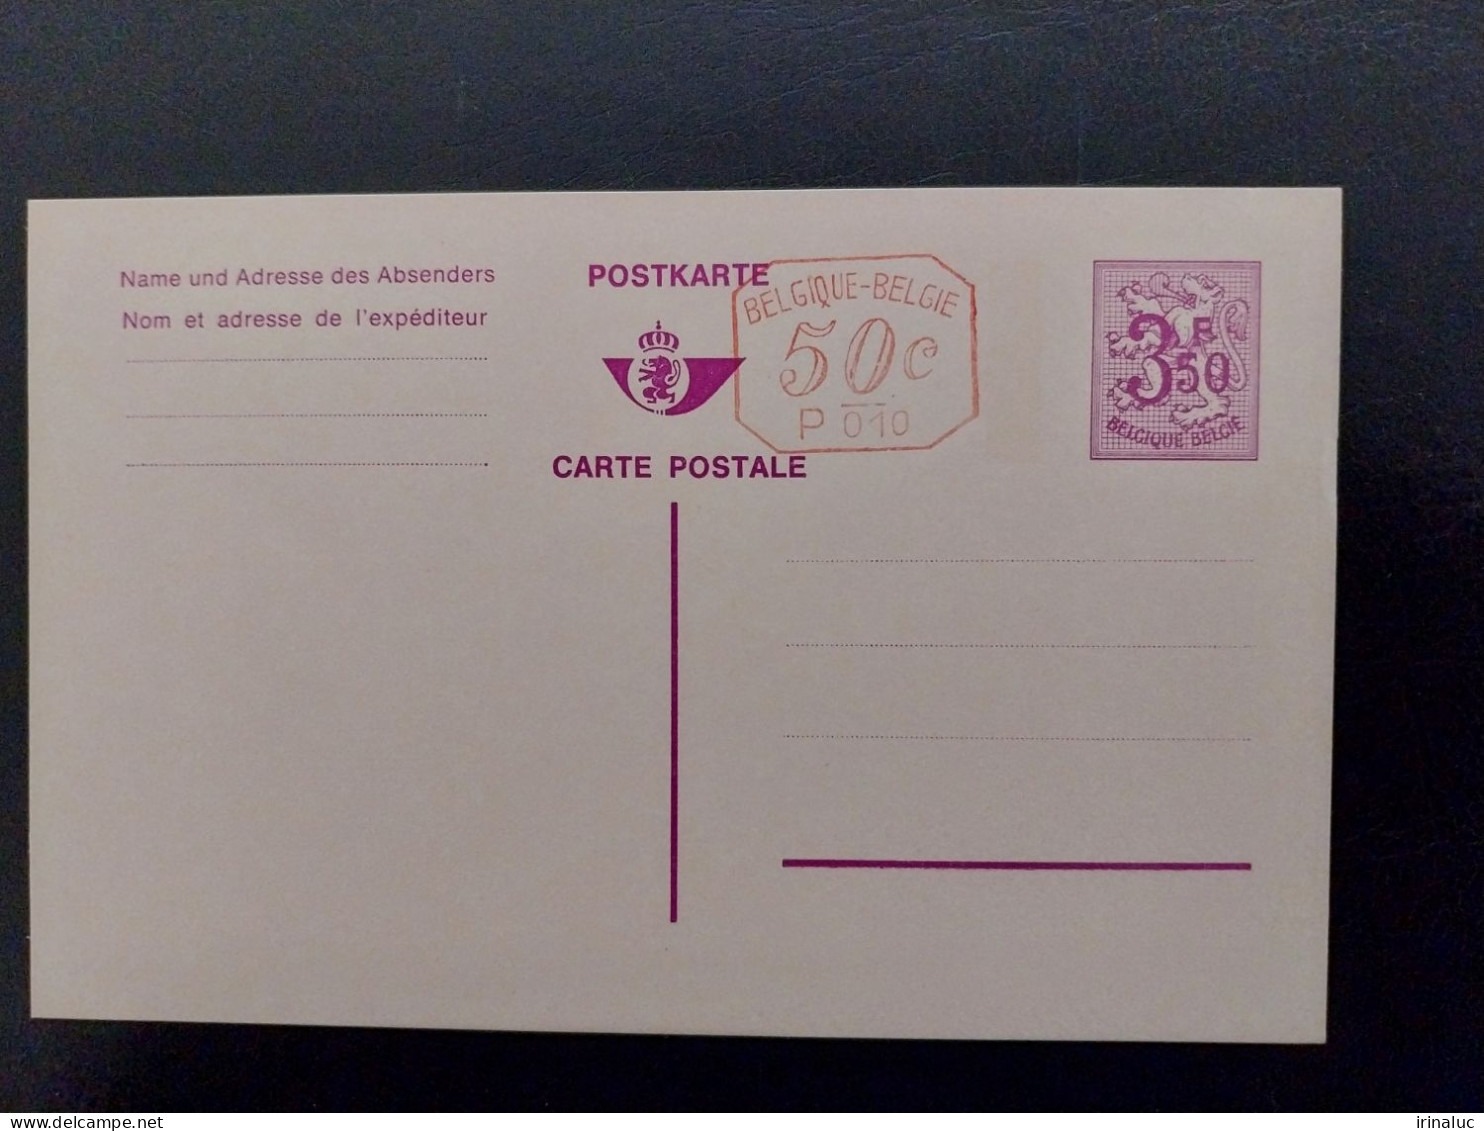 Briekaart 180-V P010M - Cartes Postales 1951-..